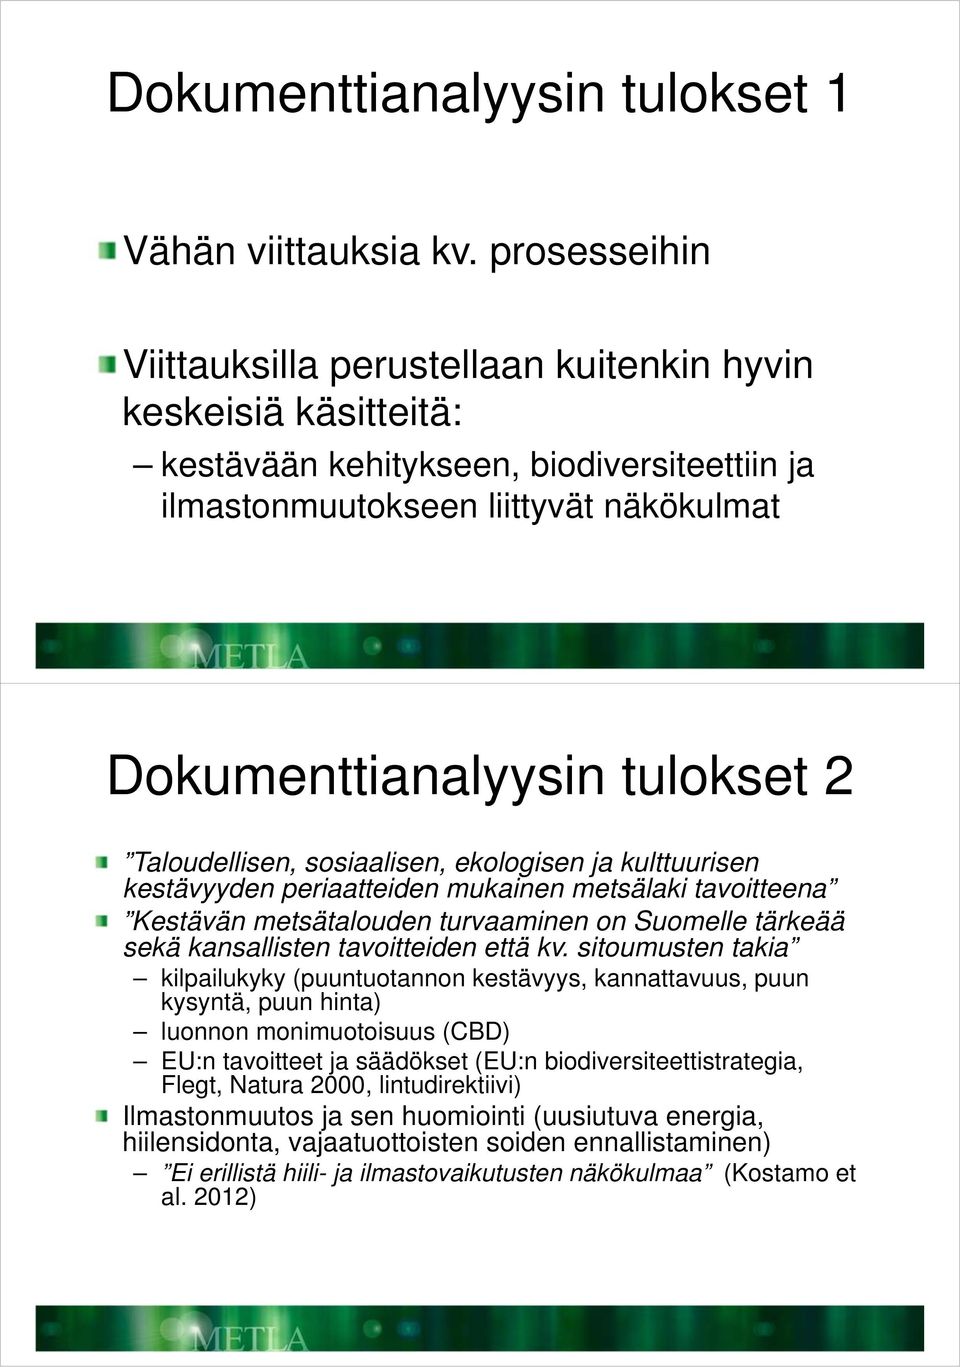 Taloudellisen, sosiaalisen, ekologisen ja kulttuurisen kestävyyden periaatteiden mukainen metsälaki tavoitteena Kestävän metsätalouden turvaaminen on Suomelle tärkeää sekä kansallisten tavoitteiden